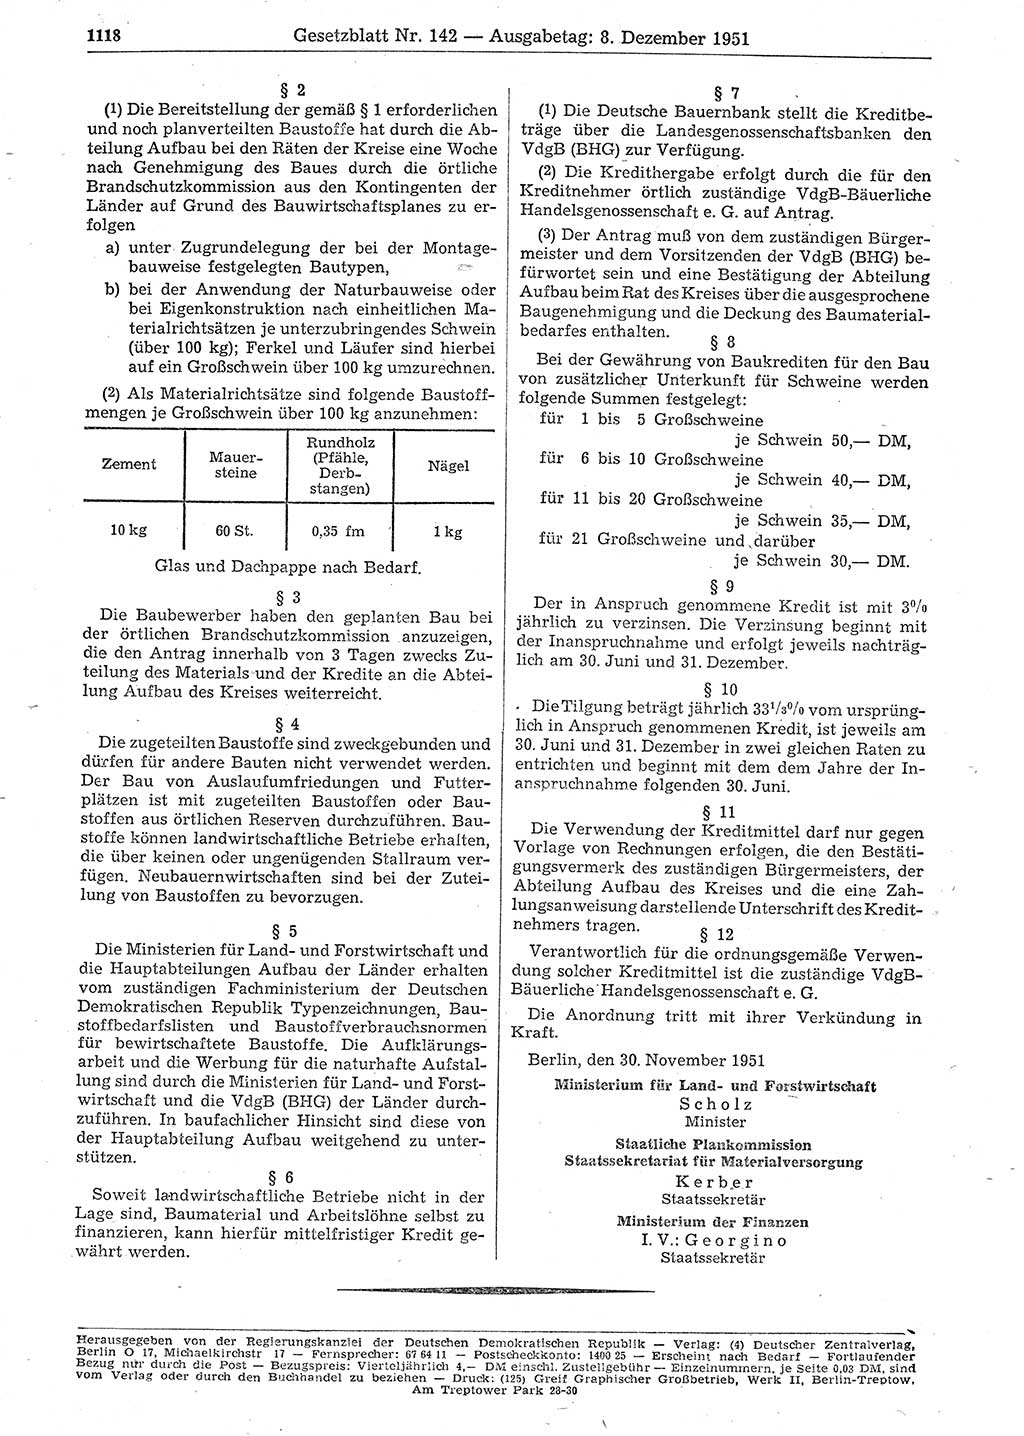 Gesetzblatt (GBl.) der Deutschen Demokratischen Republik (DDR) 1951, Seite 1118 (GBl. DDR 1951, S. 1118)